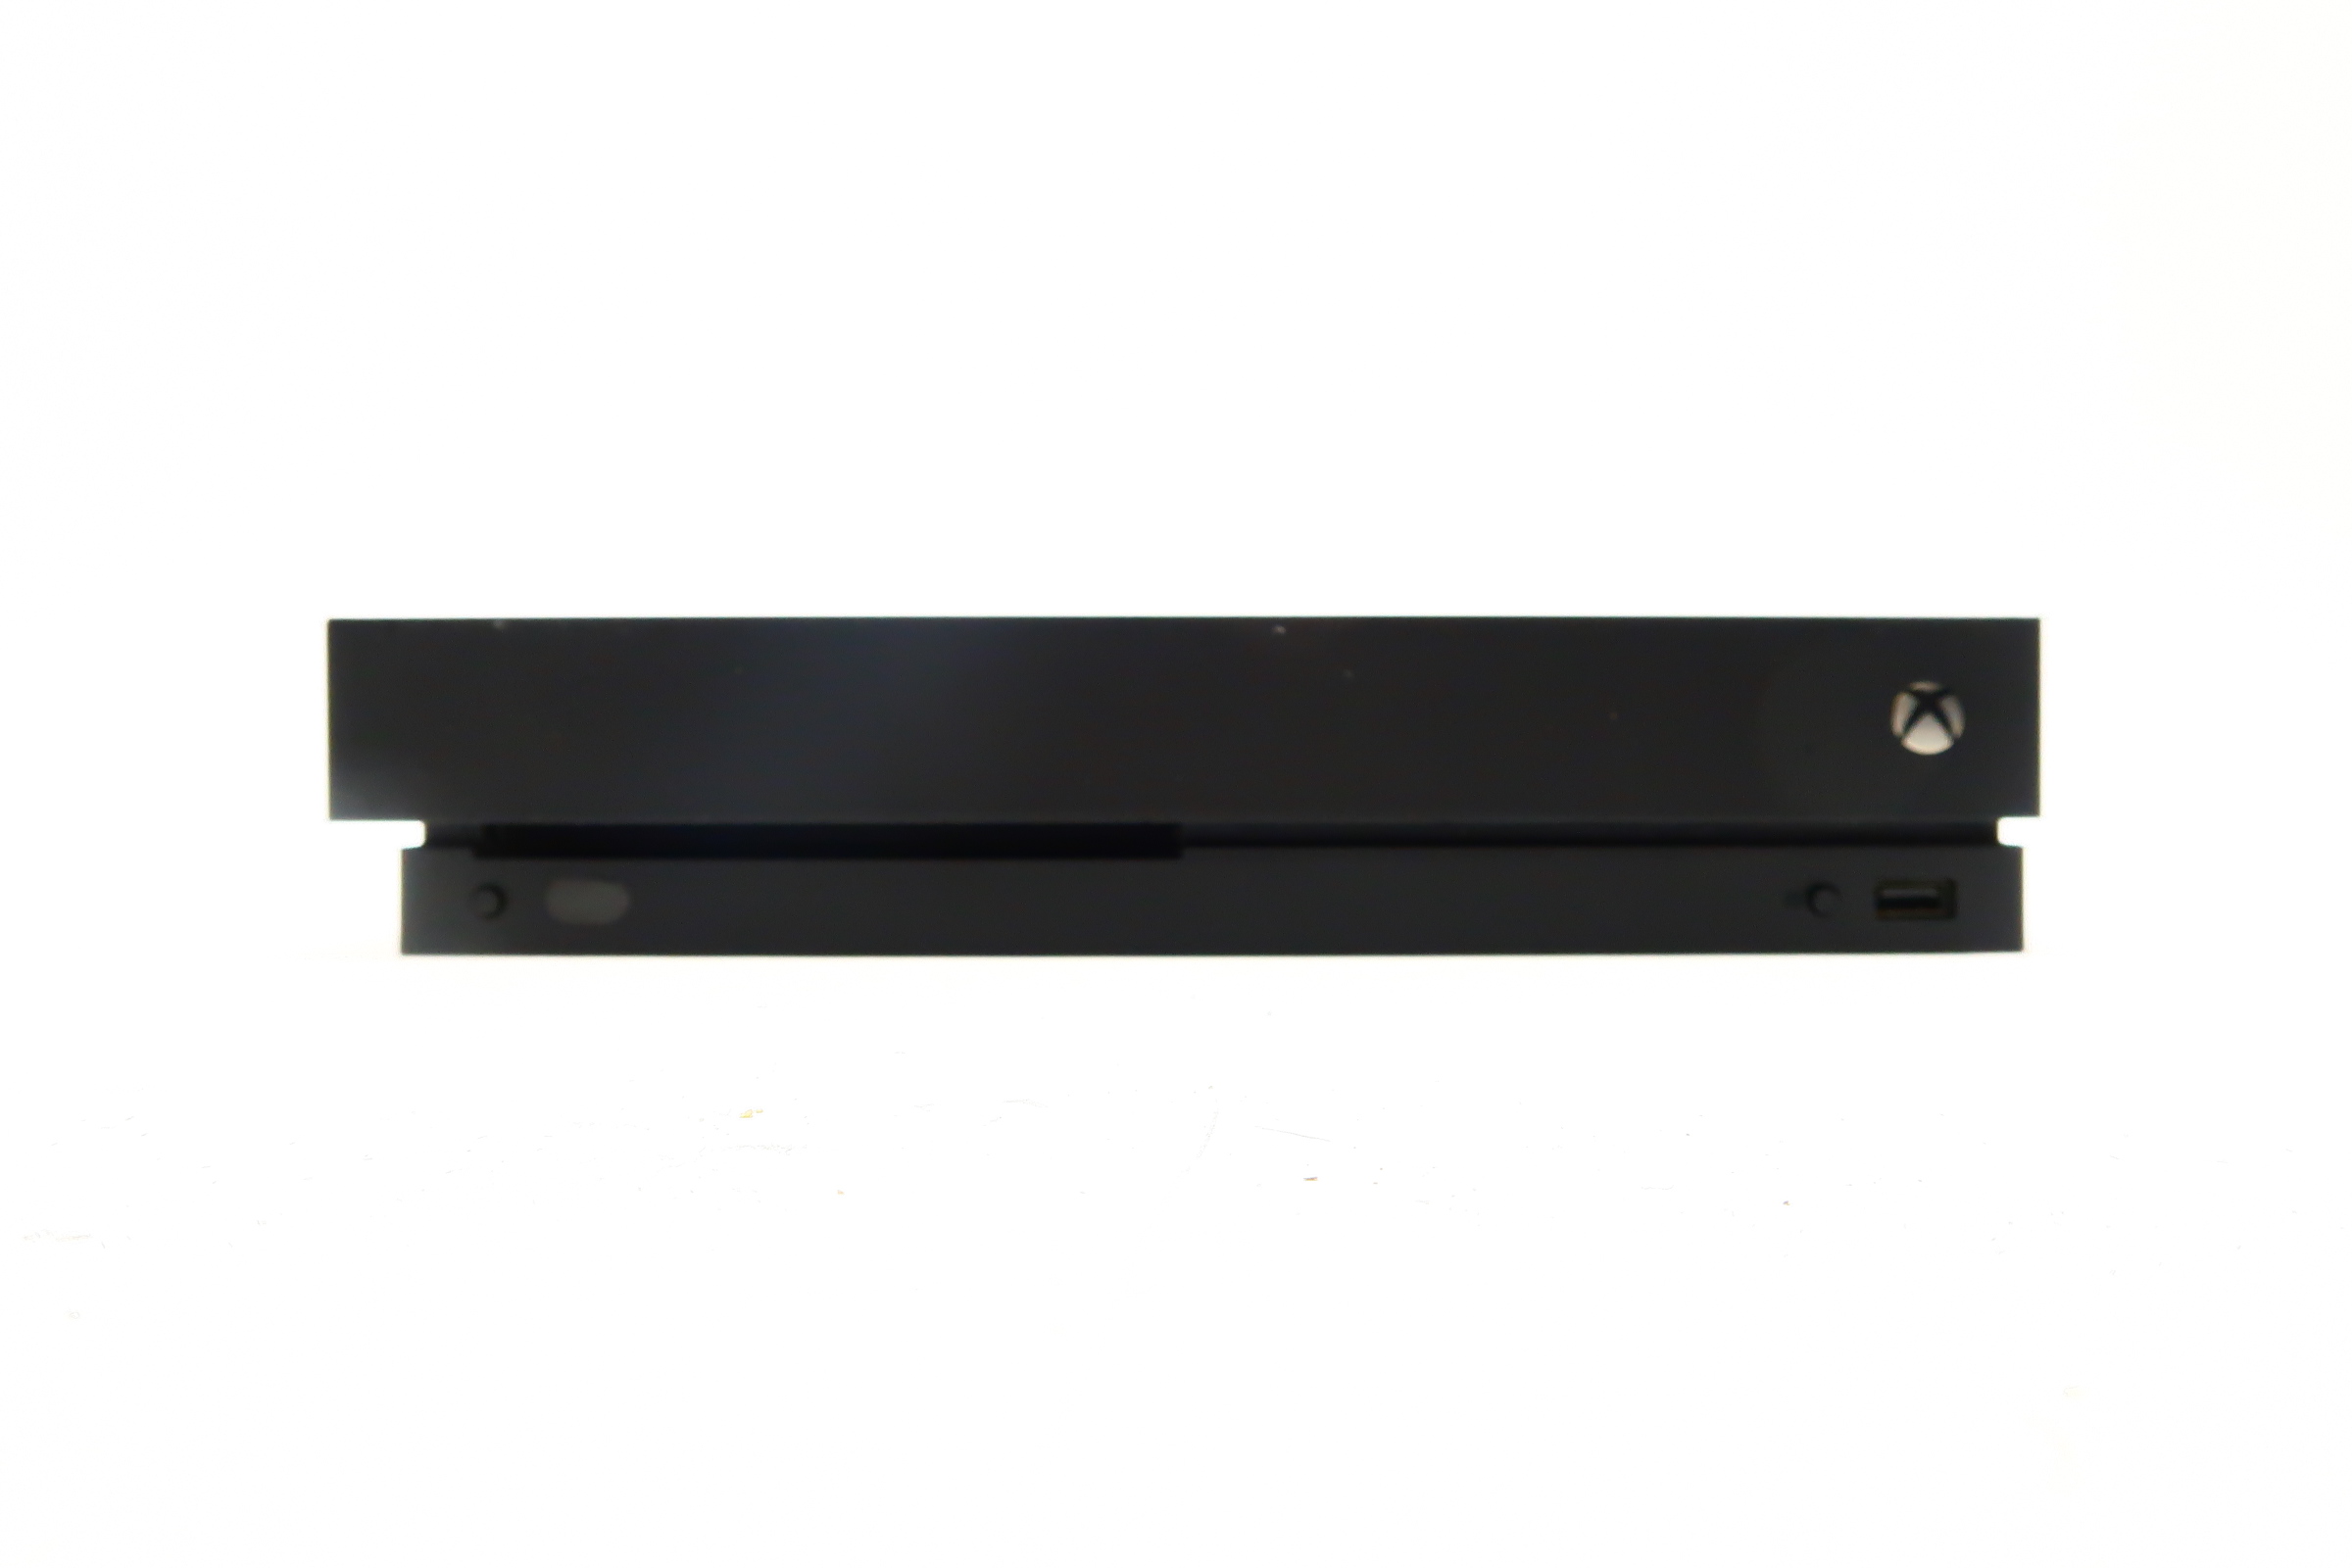 Preços baixos em Sony PlayStation 4 Pro NTSC-U/C (EUA/Canadá) console de  consoles de videogame